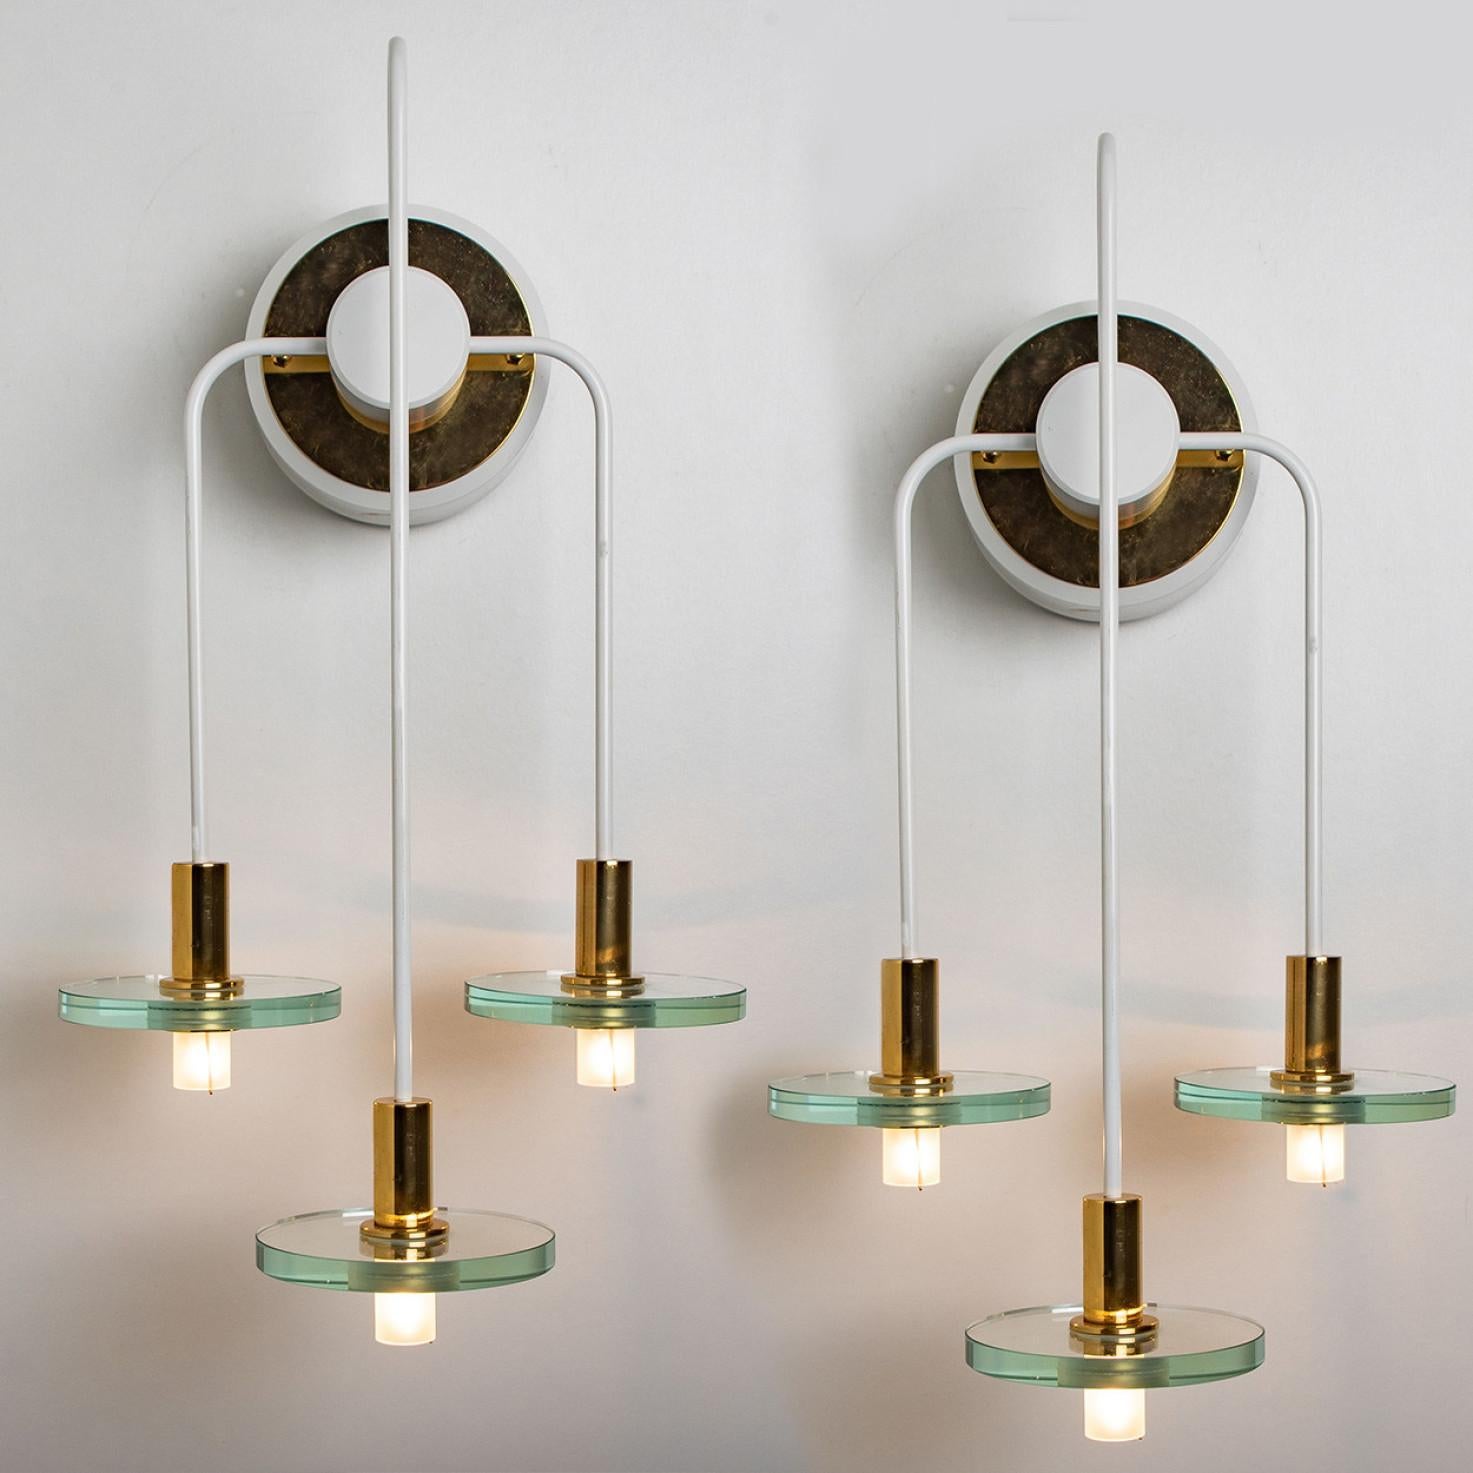 Diese einzigartigen Wandleuchten wurden um 1970 von der legendären Firma Kalmar Lighting in Deutschland entworfen und hergestellt.
Durch das weiße Metall mit Messingdetails und die Glasscheiben wirken sie sehr räumlich.

Die Leuchten können in